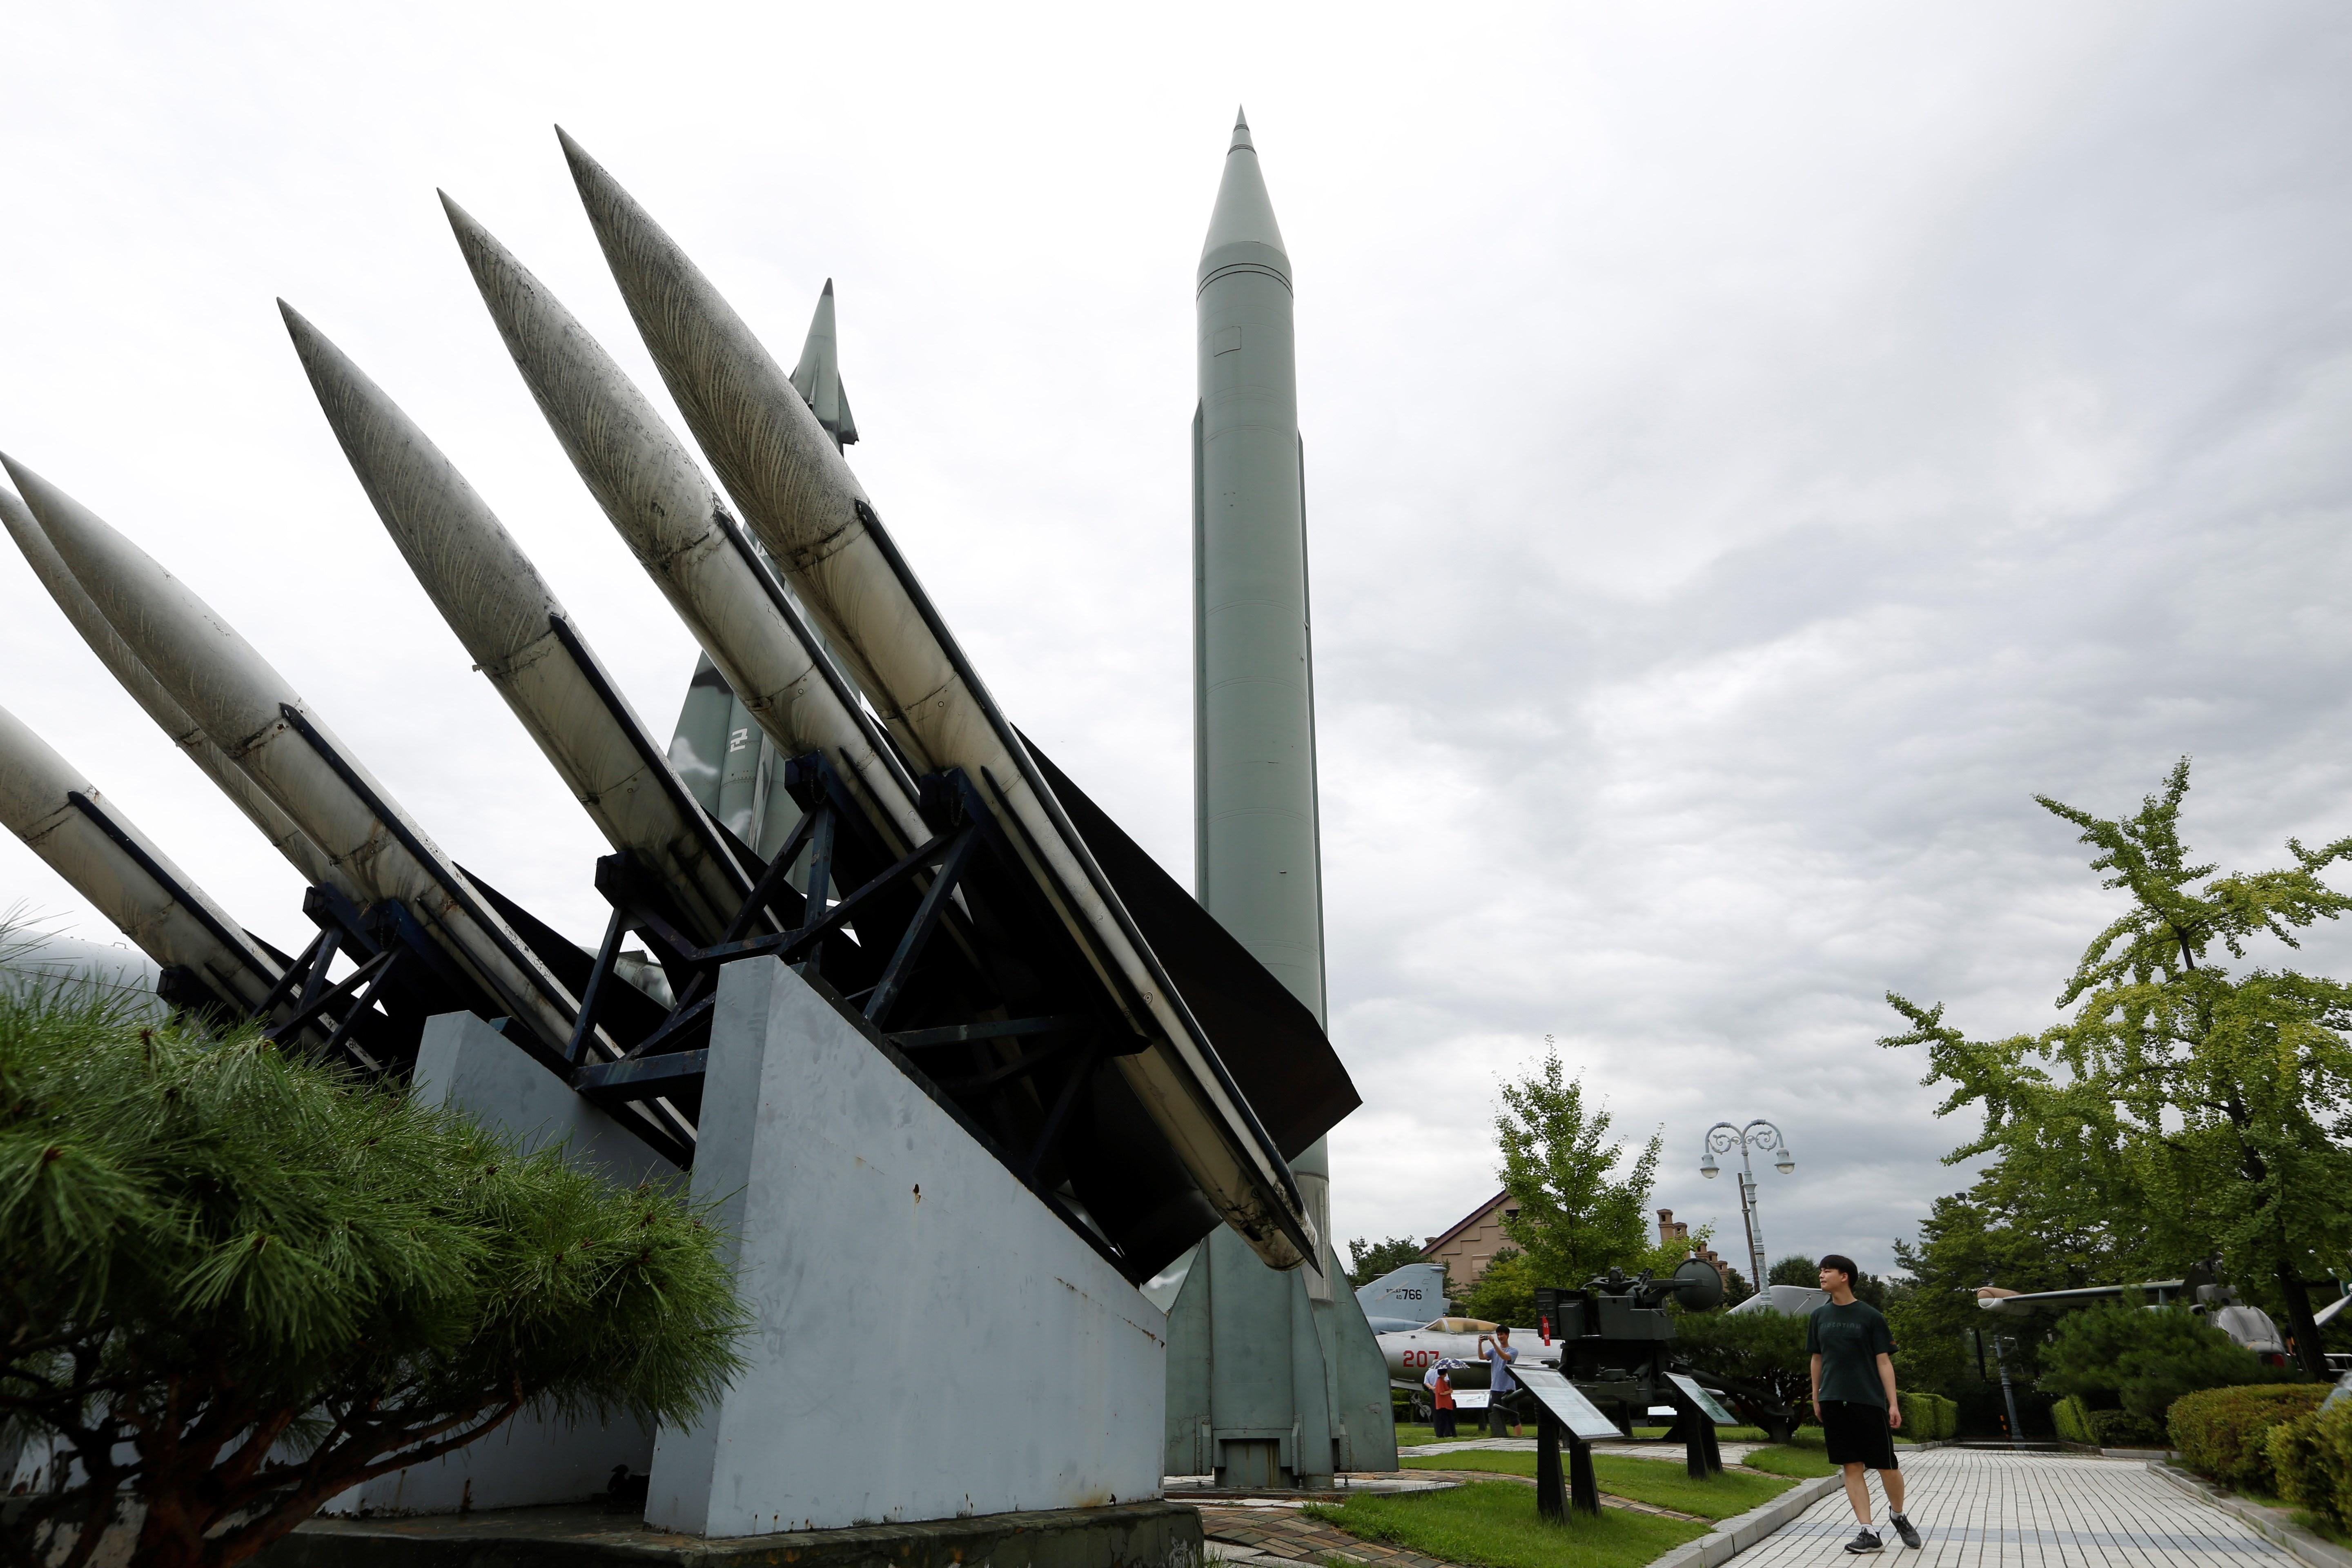  Corea del Norte realiza un nuevo lanzamiento de proyectiles de prueba